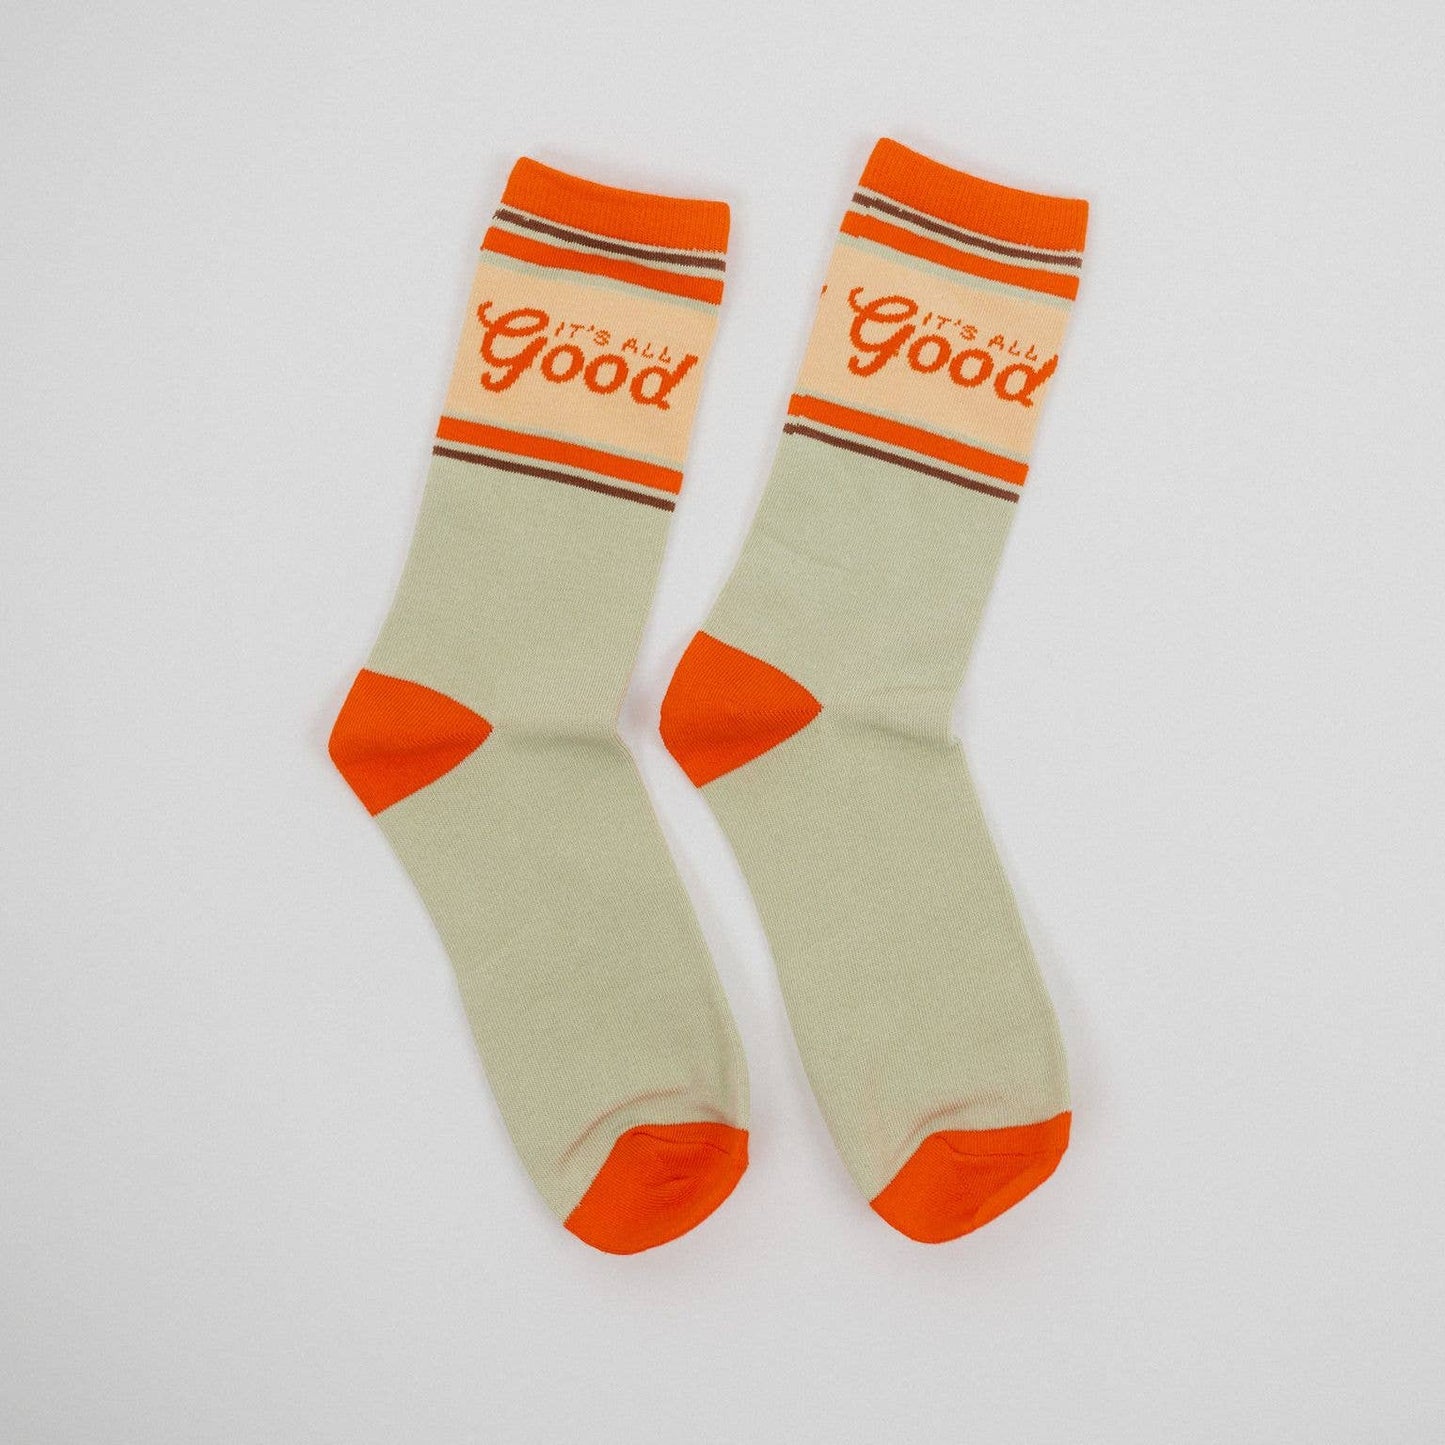 It's All Good Unisex Socks - Sage/Orange